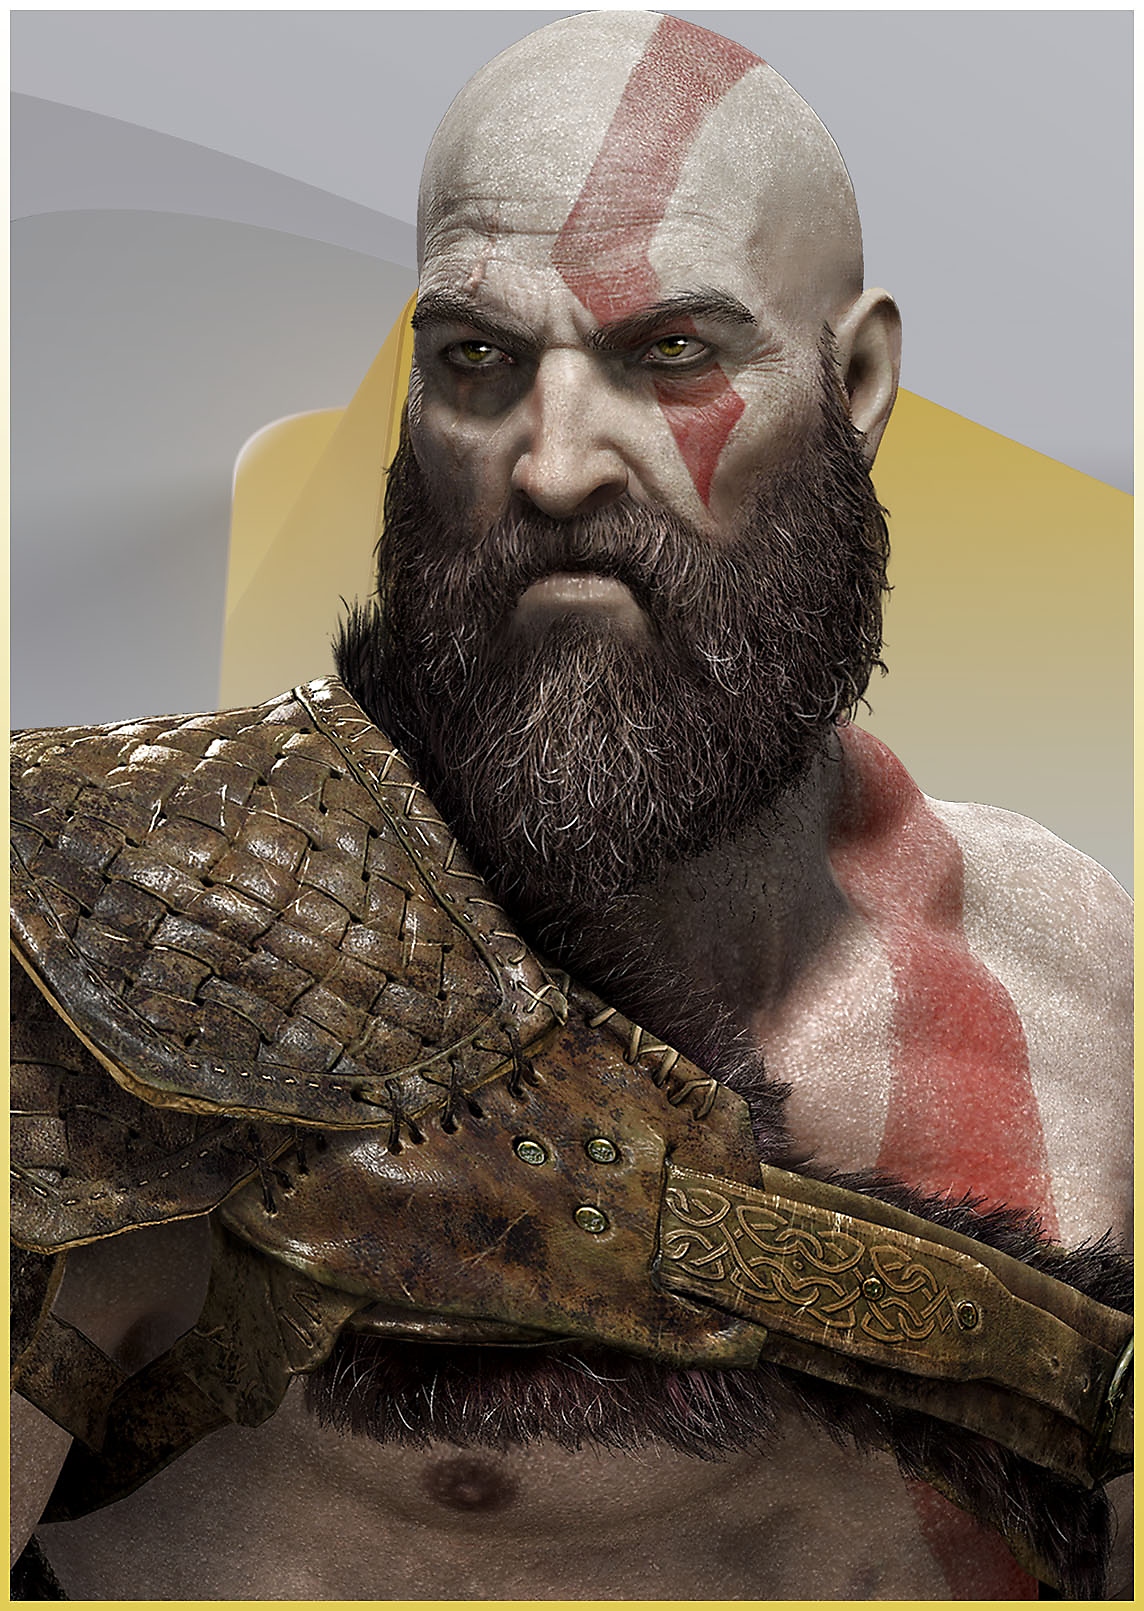 Kratos de God of War avec une expression énervée